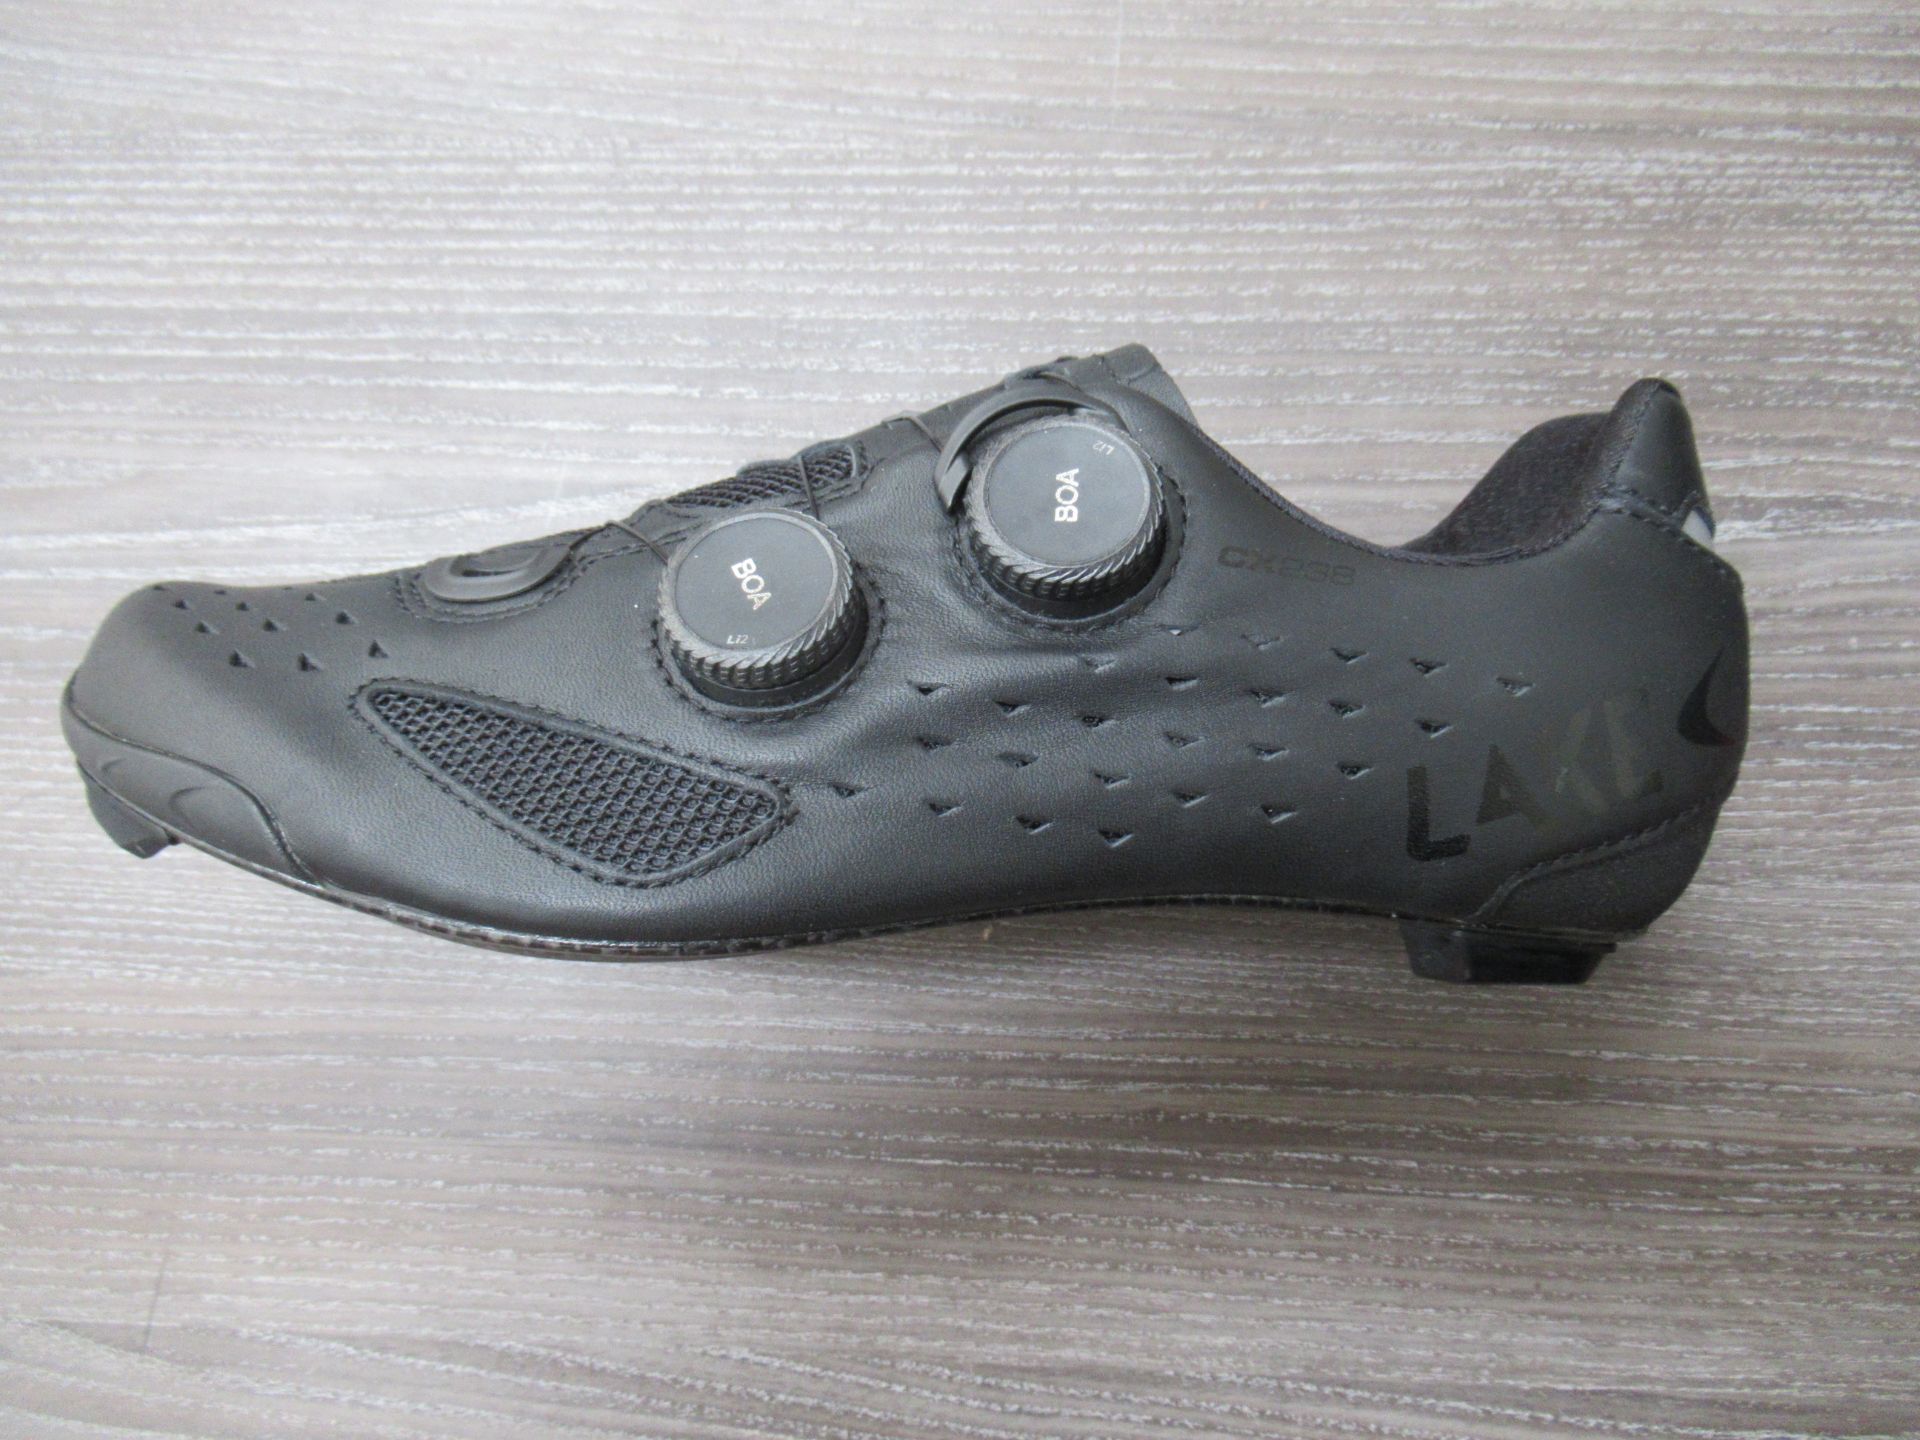 Pair of Lake CX238-X cycling shoes (black/black) - boxed EU size 41.5 (RRP£270)